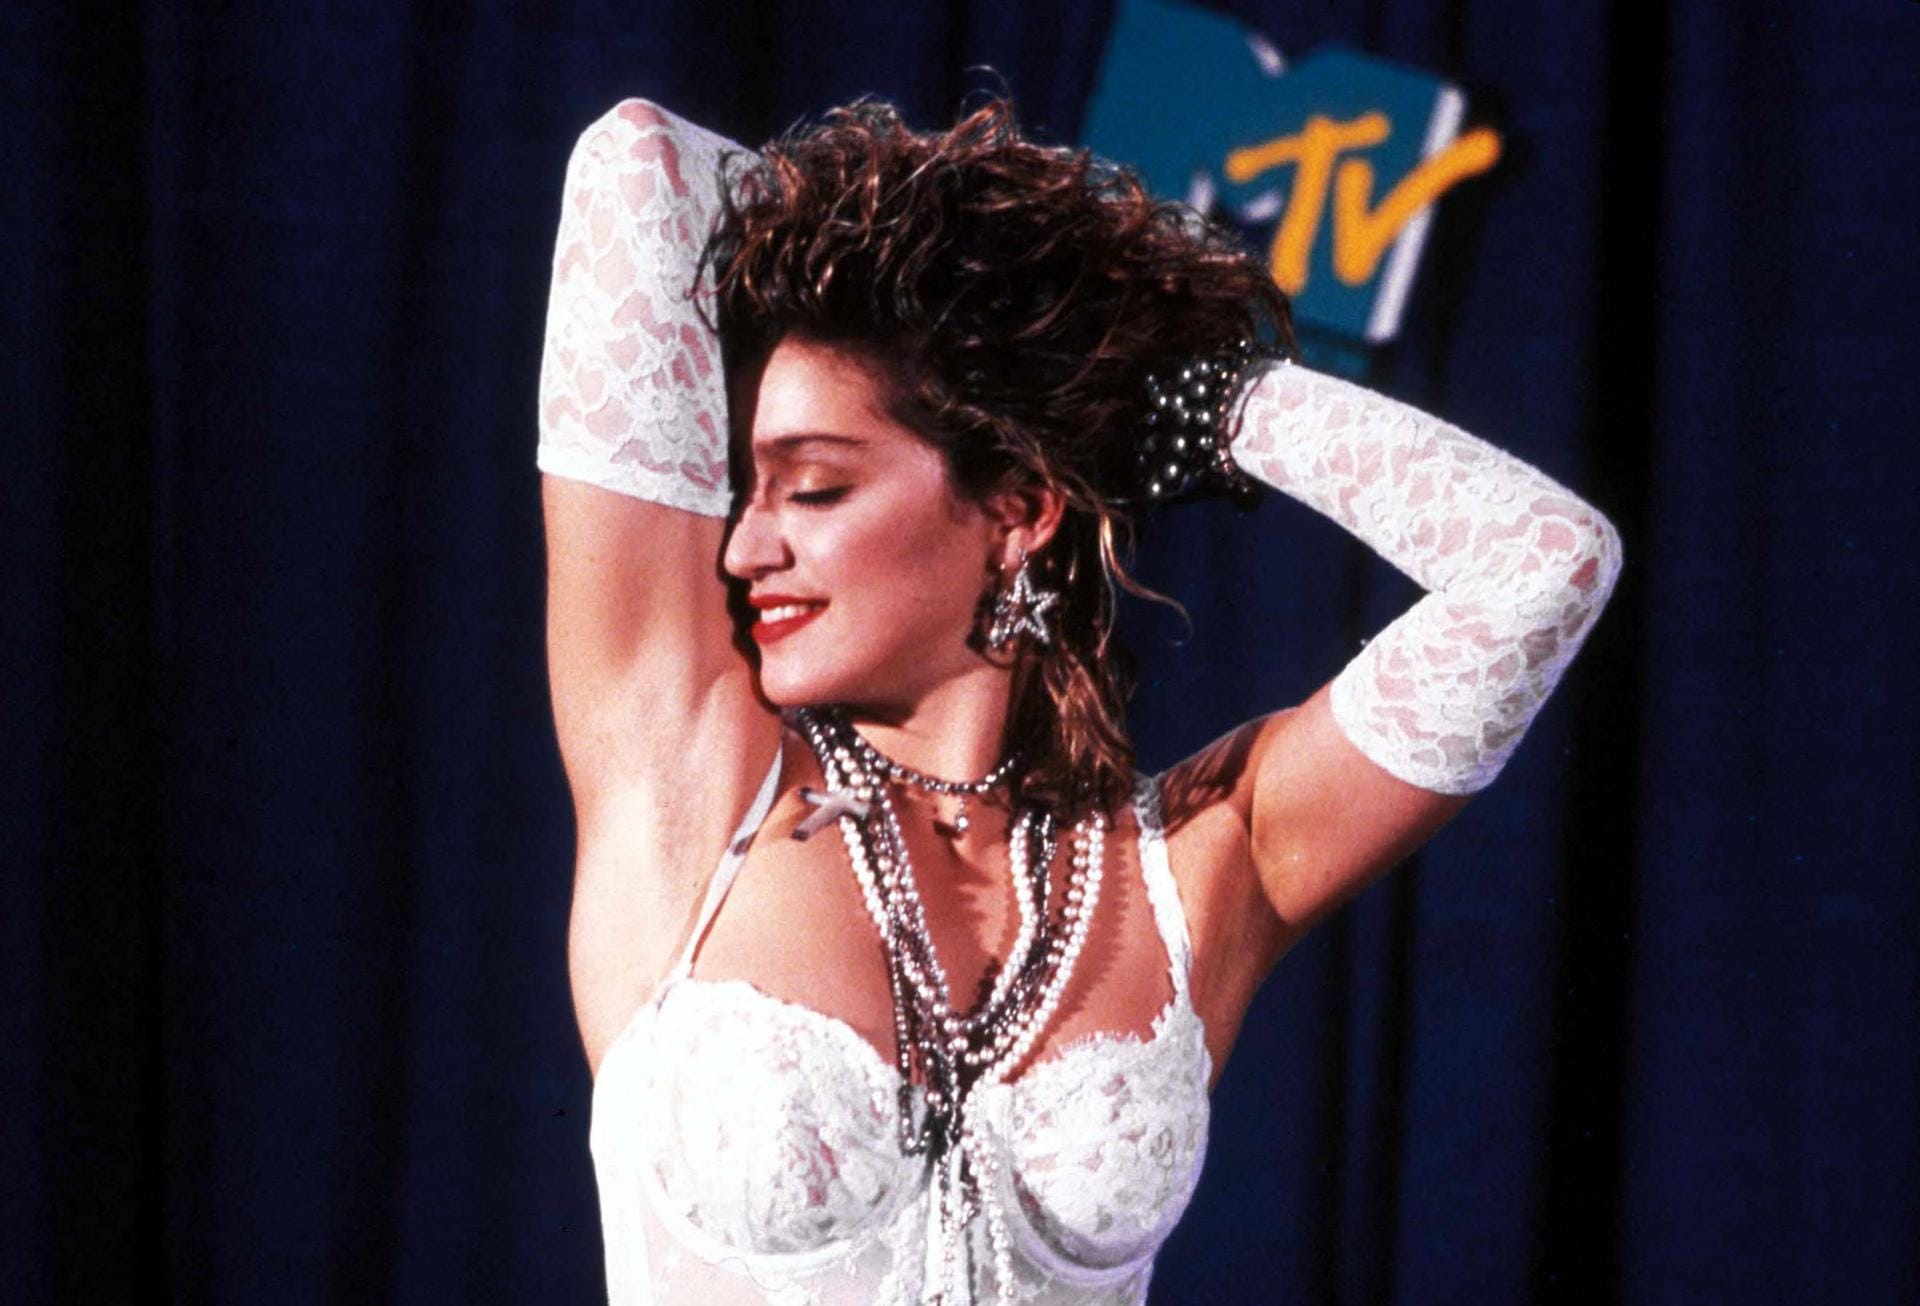 Ärger brachte Madonna wenig später auch das Video zur zweiten Single "Justify my Love" ein. Es wurde von MTV wegen Obszönität nicht gezeigt. In Kanada sah man in dem Clip sogar einen Grund für eine Verhaftung.